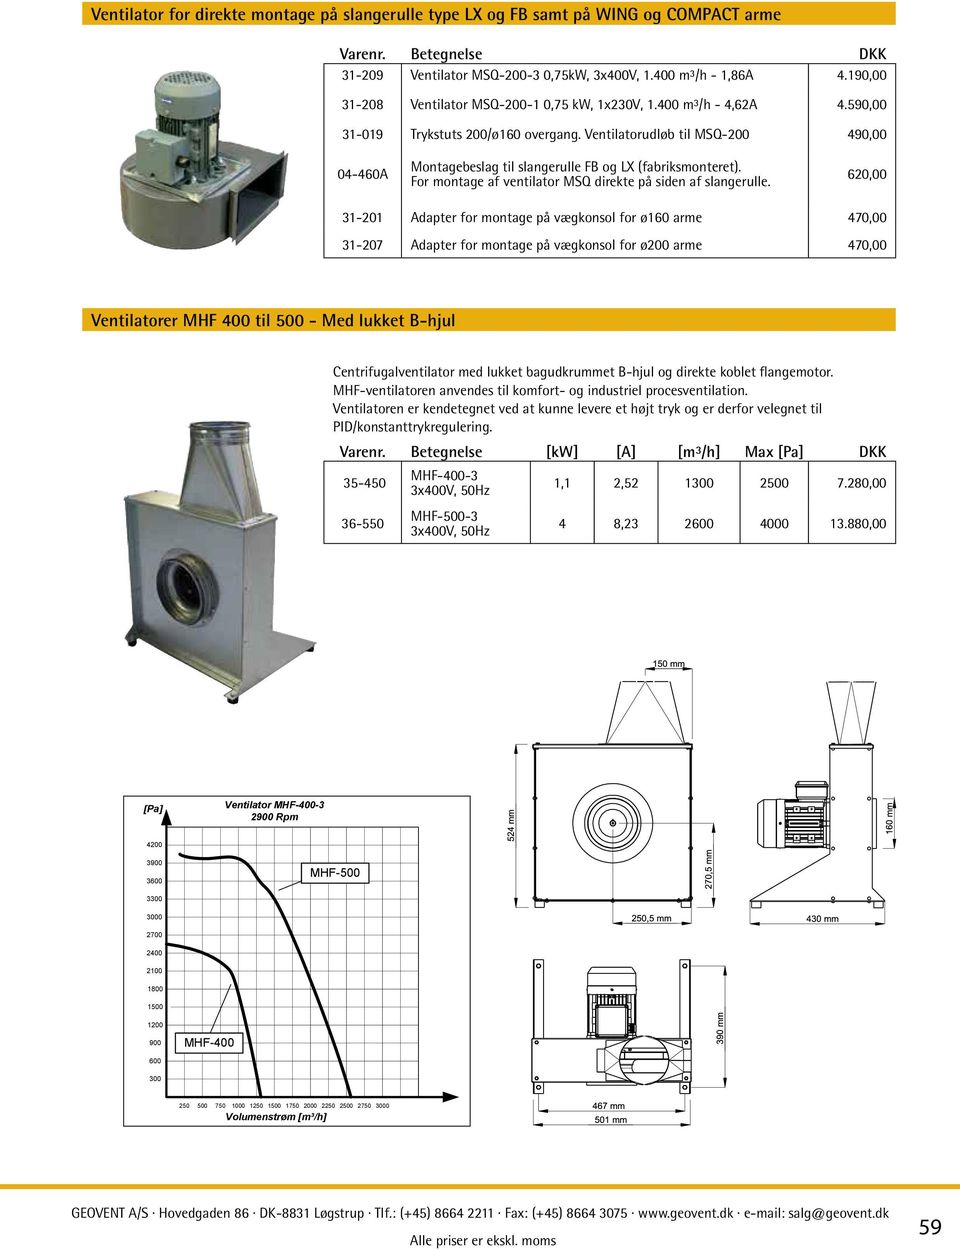 Ventilatorudløb til MSQ-200 490,00 04-460A Montagebeslag til slangerulle FB og LX (fabriksmonteret). For montage af ventilator MSQ direkte på siden af slangerulle.